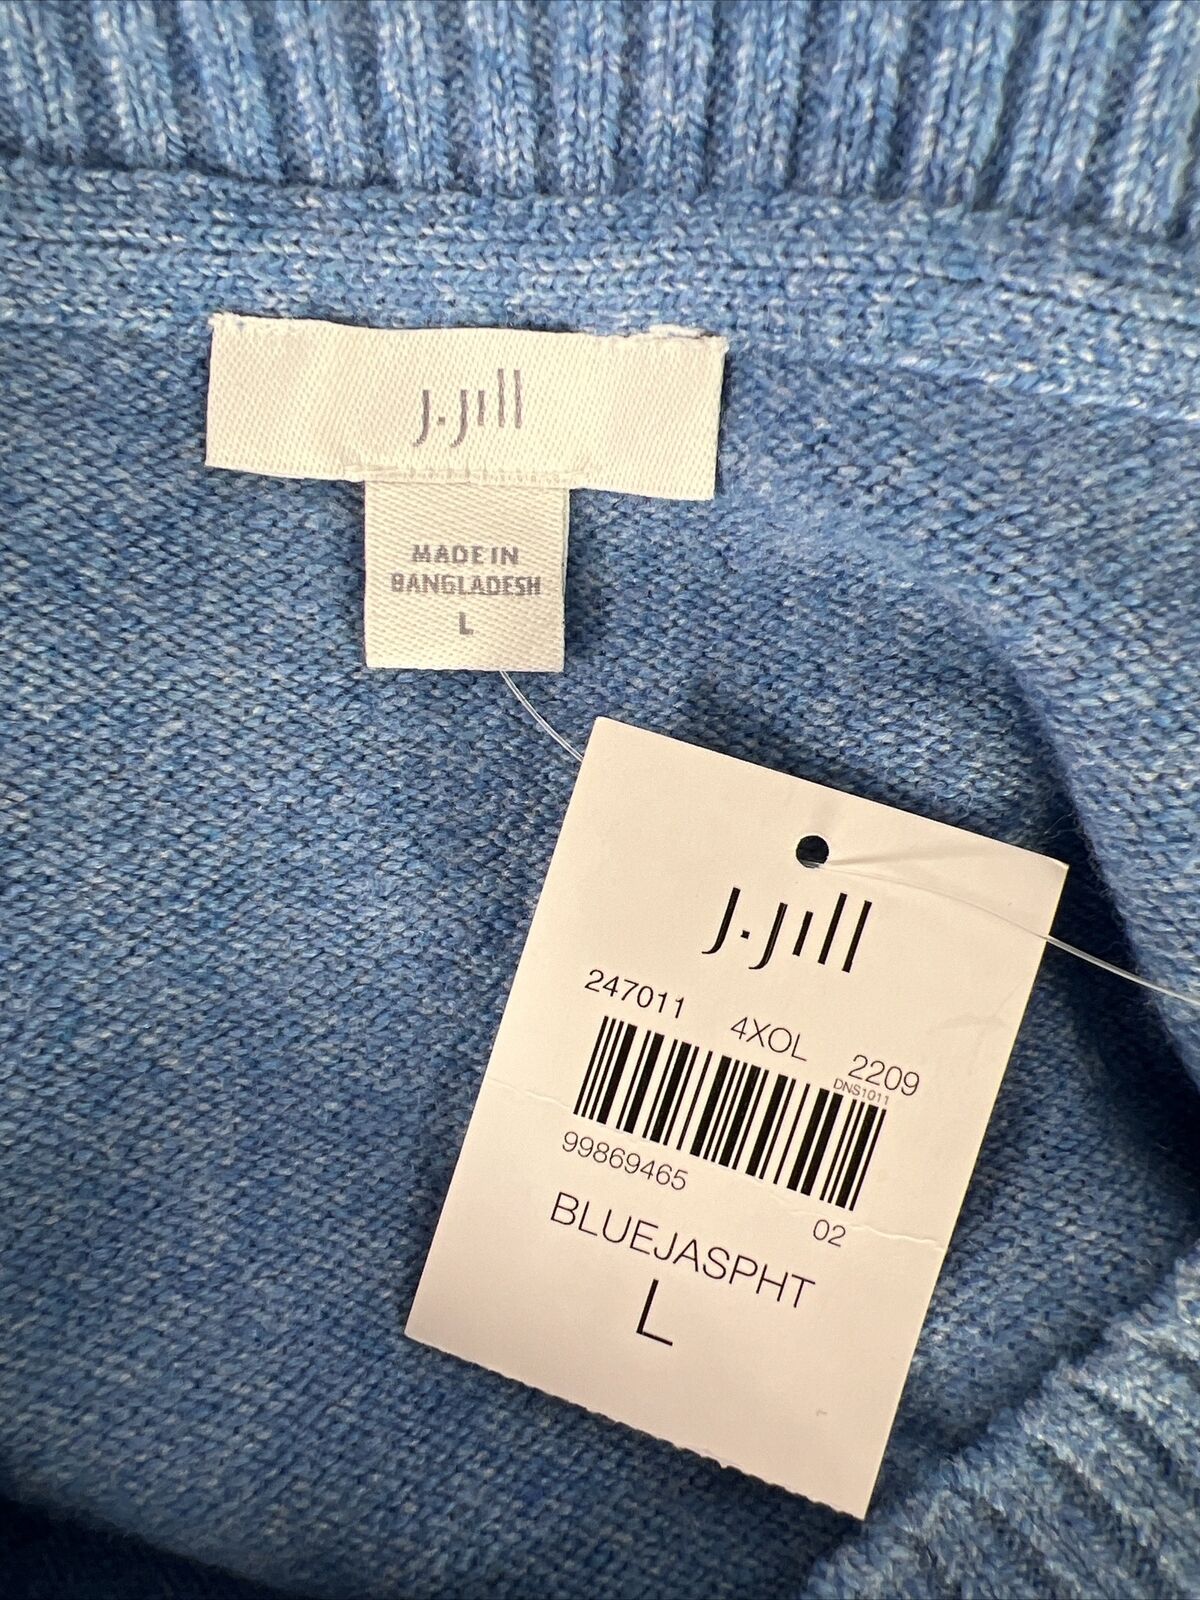 NUEVO Suéter azul con dobladillo dividido y manga larga de J. Jill para mujer - L